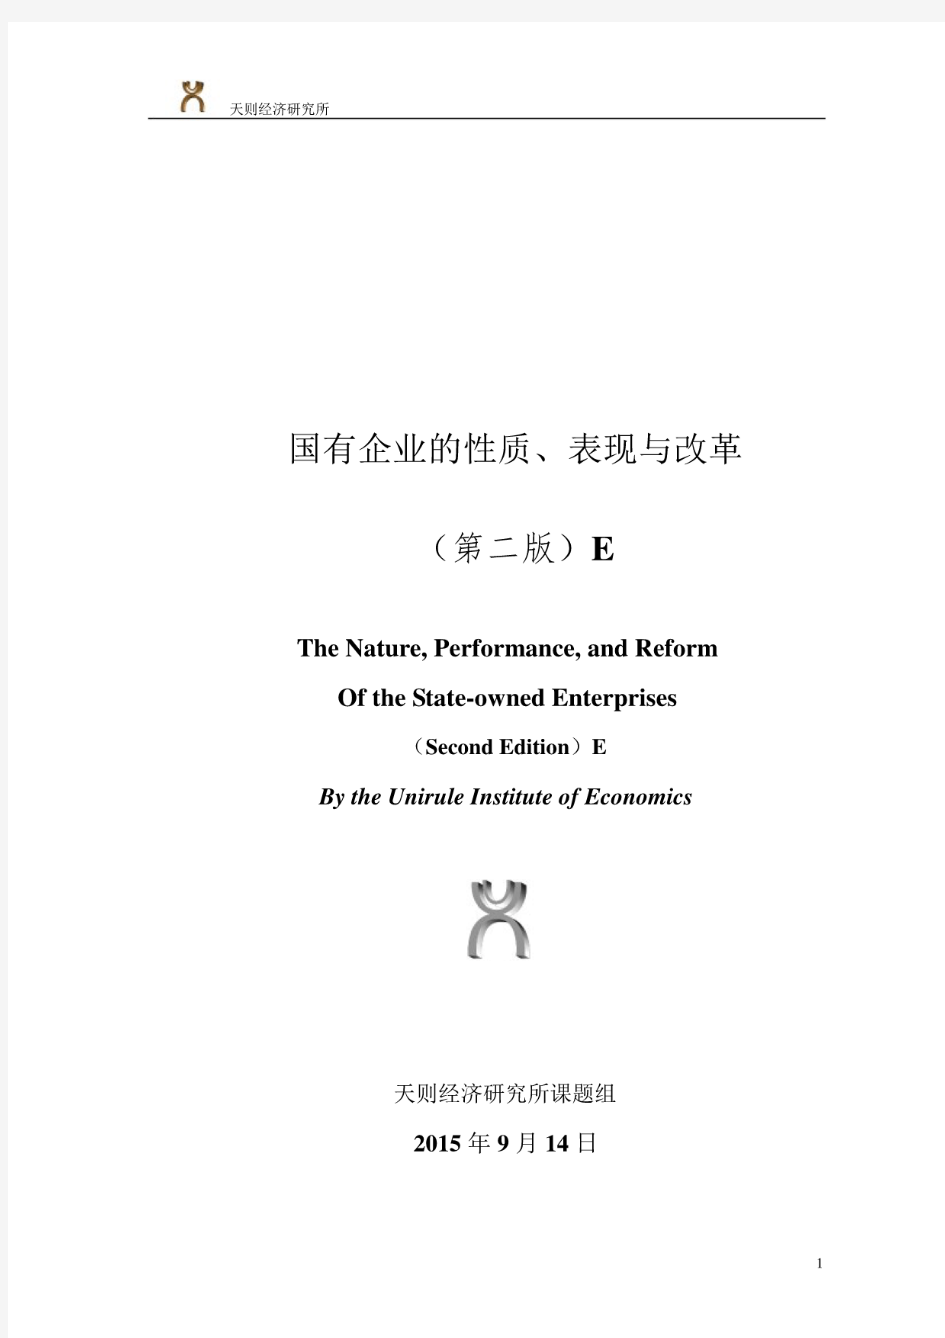 国有企业的性质、表现与改革(第二版)